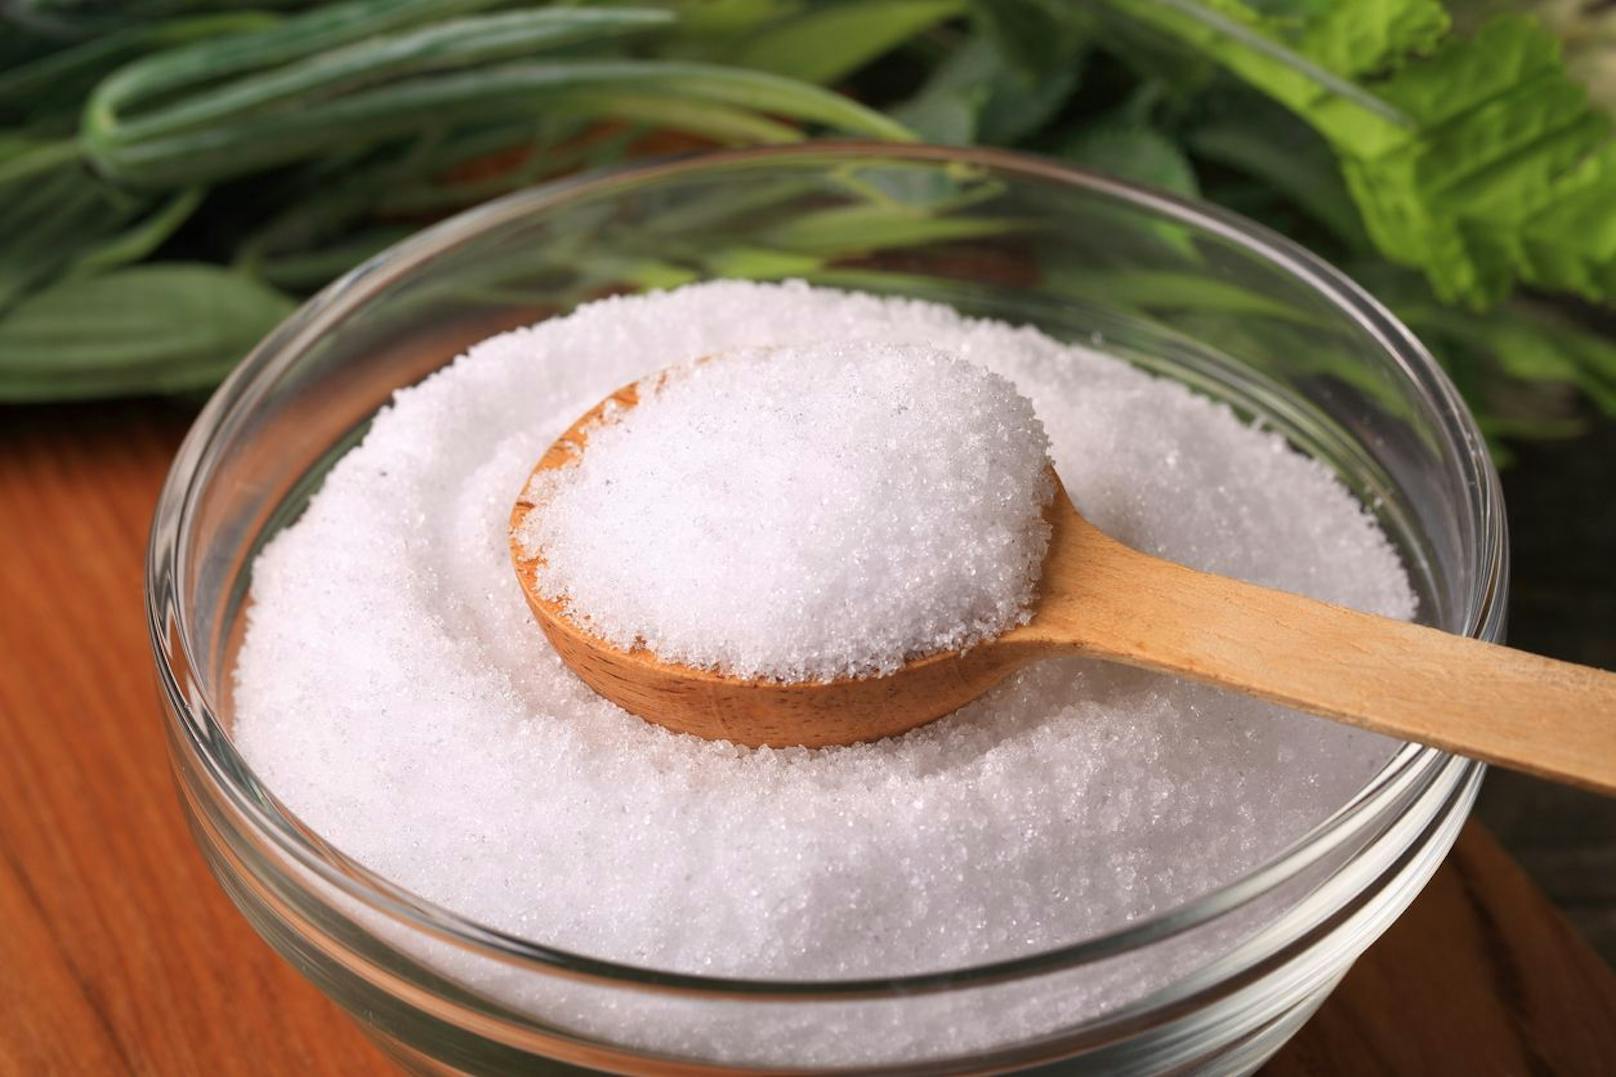 Wer gerne nascht kann statt Zucker auch gesündere Alternativen verwenden. Diese wären Erythrit, Stevia, Xylit oder Kokosblütenzucker. Auch Honig oder Ahornsirup reichen in Mengen aus. 